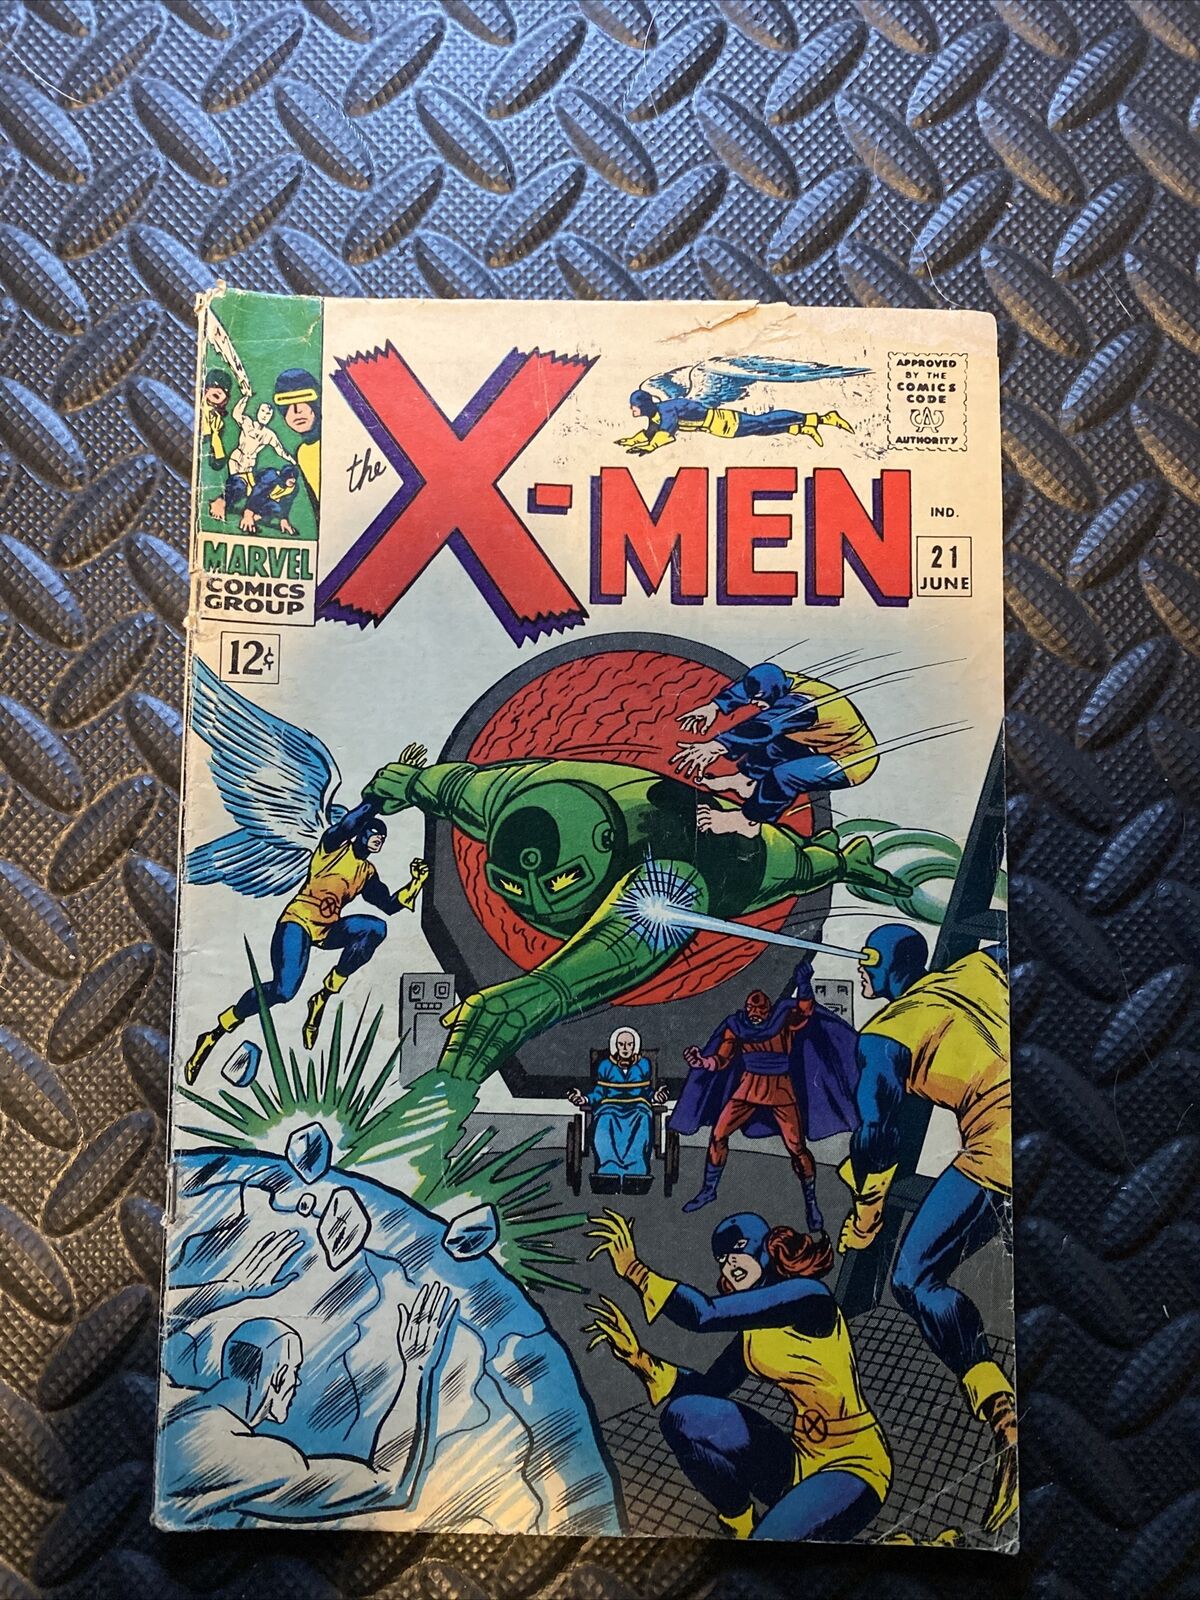 Marvel Comics - Uncanny X-Men, Vol. 1 #21 (June, 1966) Newsstand Edition